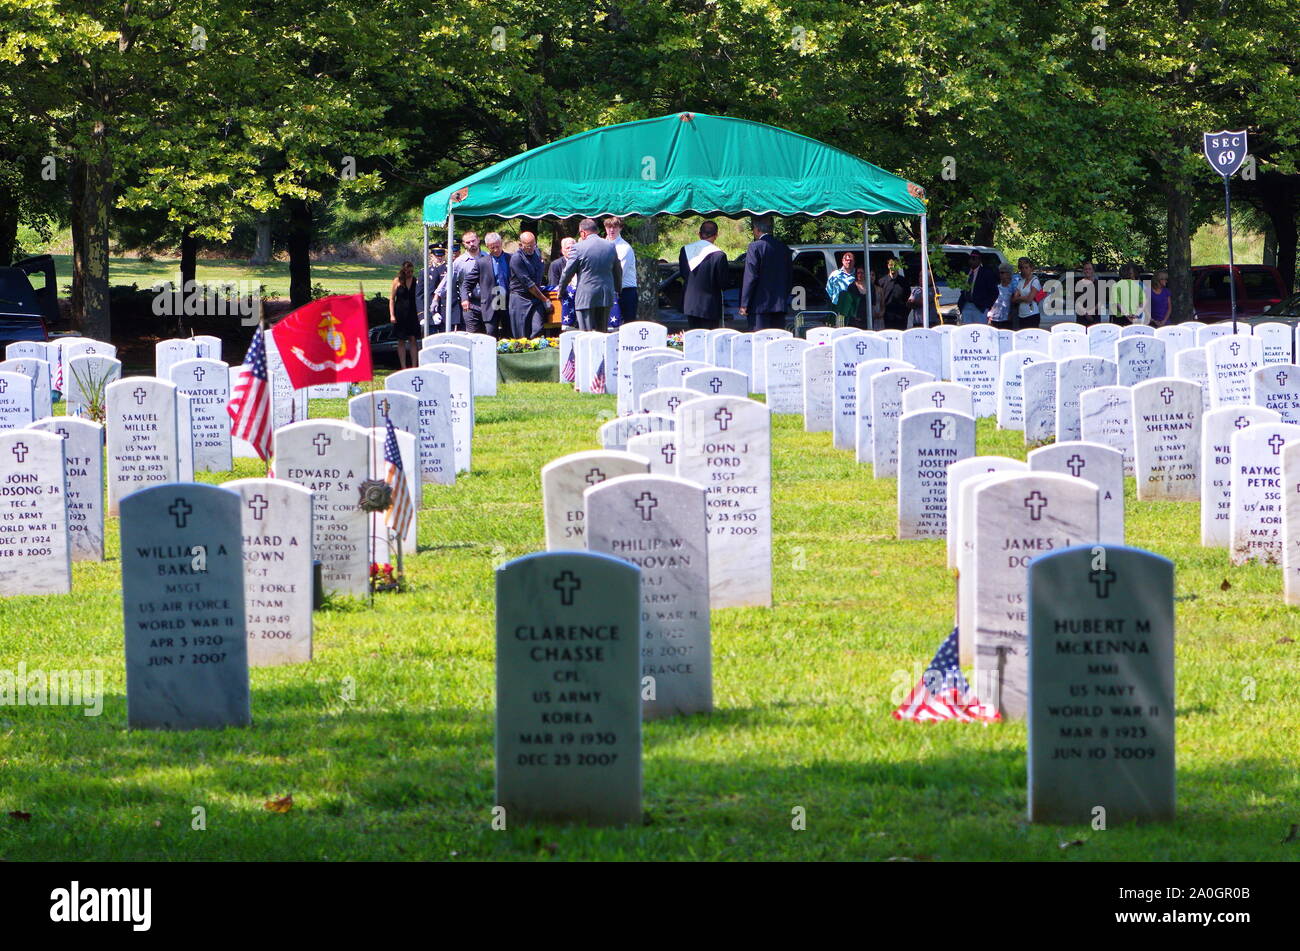 Middletown, CT, USA. Aug 2013. Partió siendo veterano enterrado con todos los honores militares en uno de los tantos cementerios estatales para veteranos en todo el país. Foto de stock